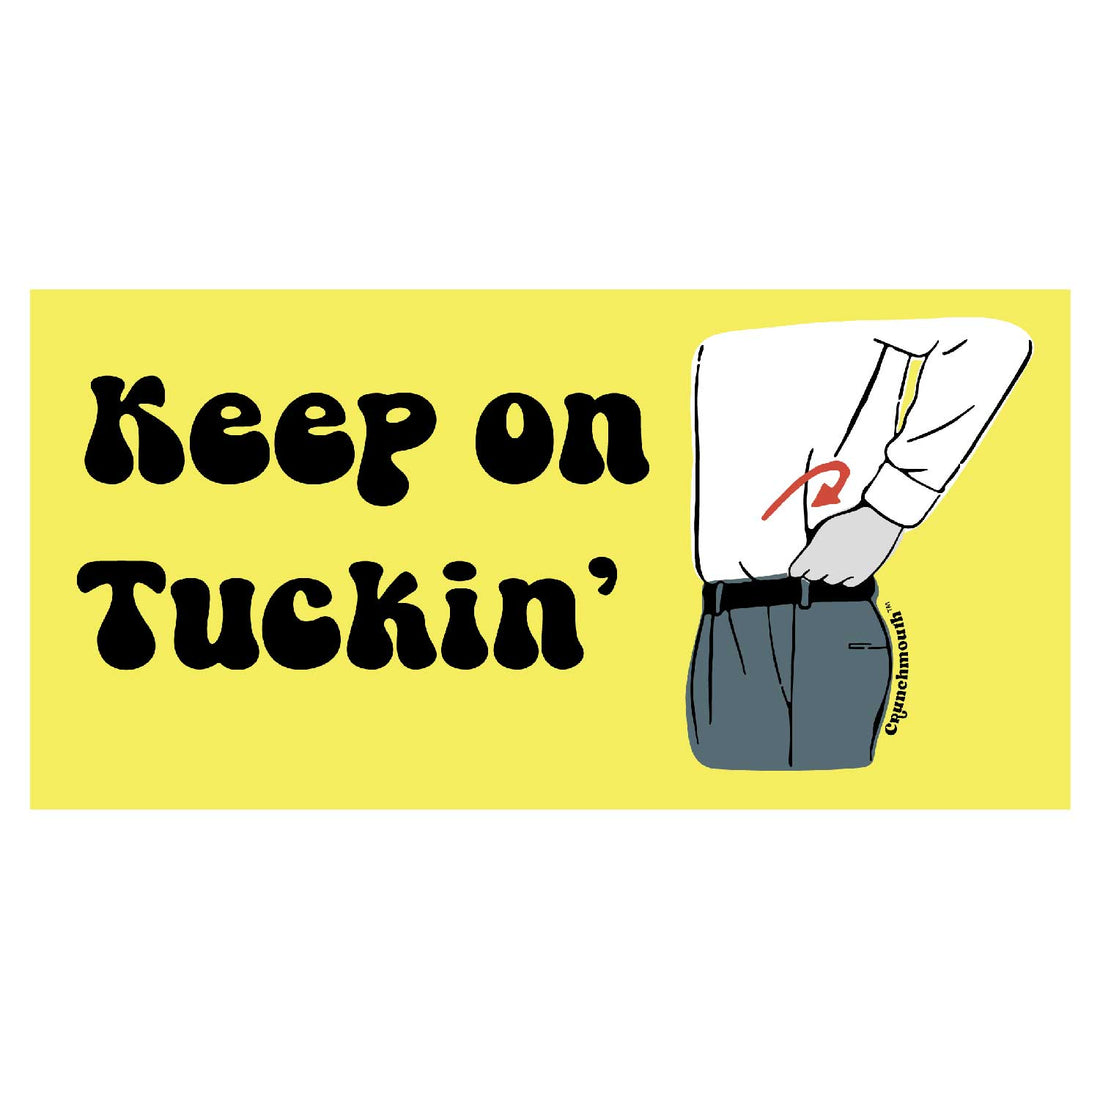 Keep on Tuckin!